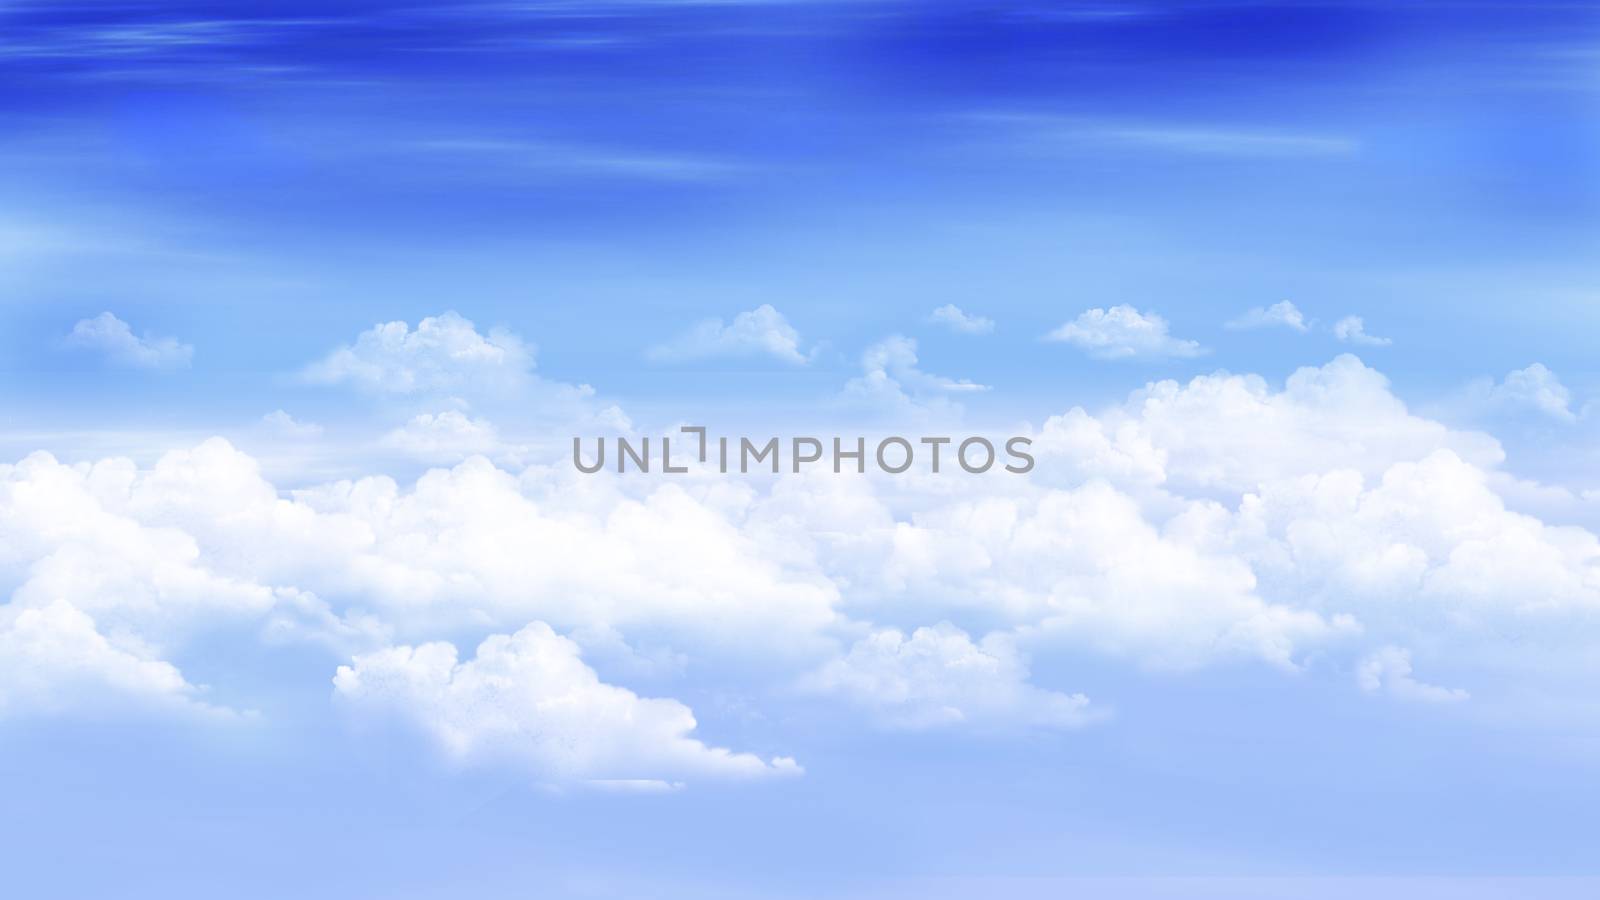 Clouds in a blue sky by Multipedia